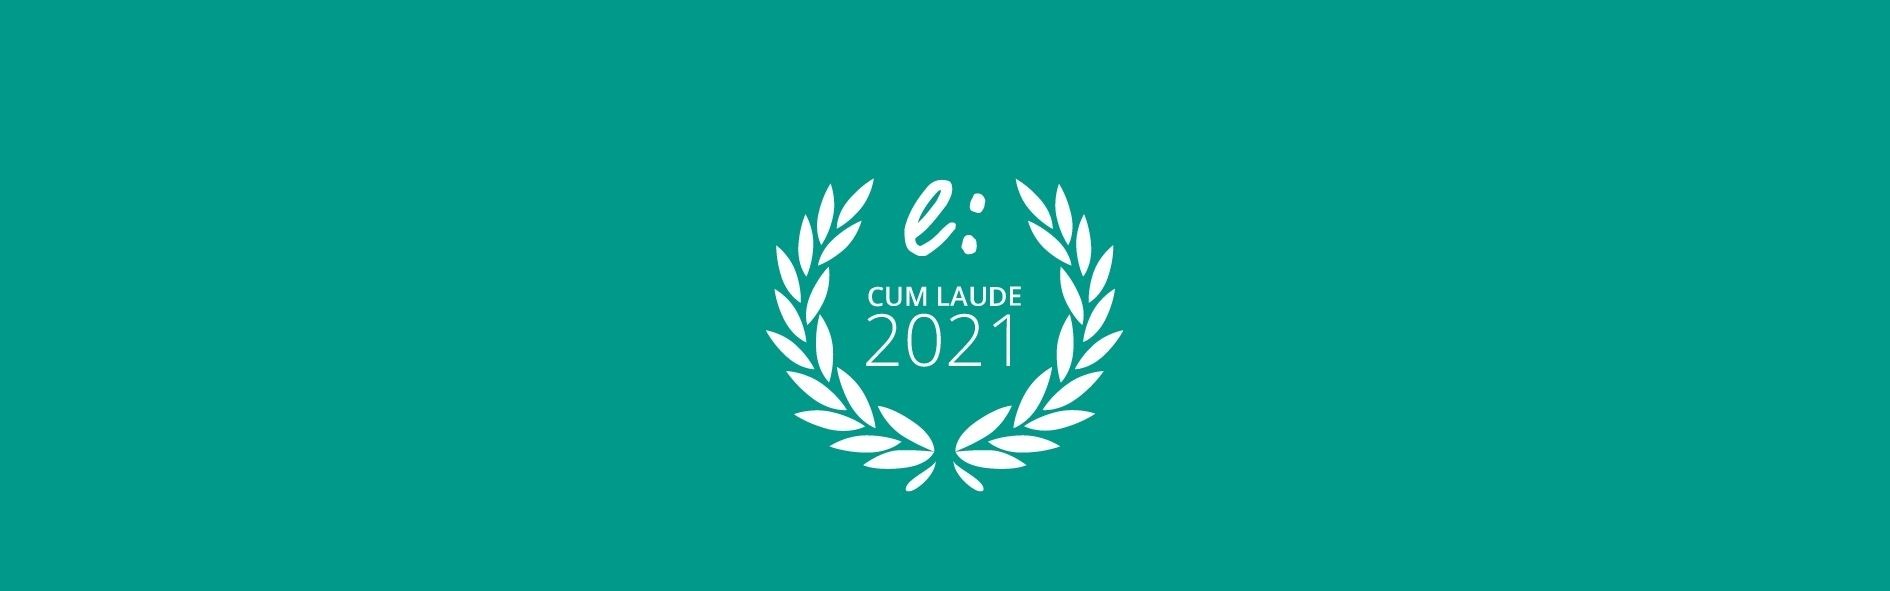 Hemos recibido el sello cum laude por opiniones Instituto Europeo de Educación